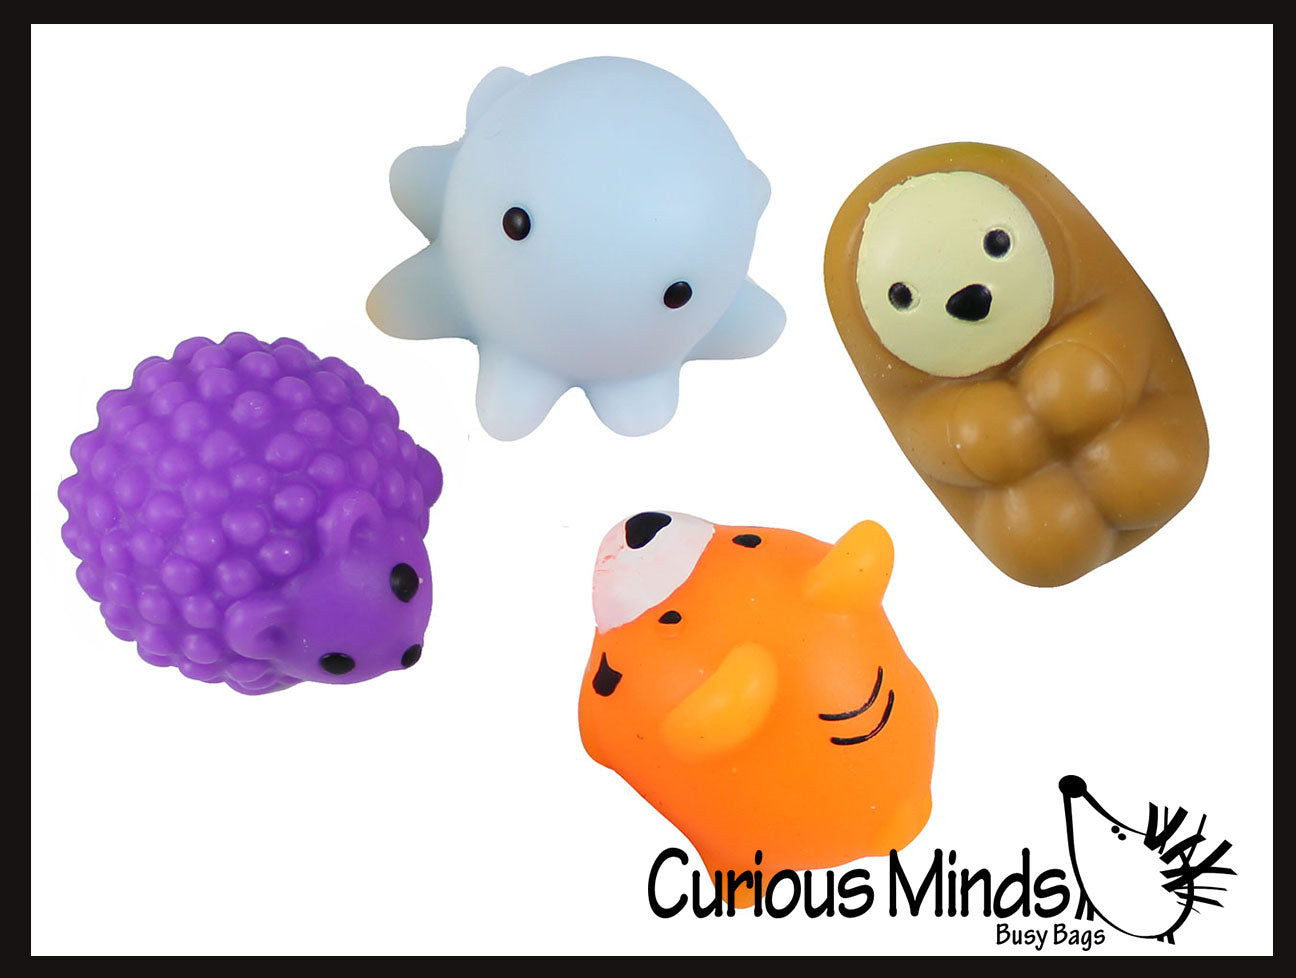 Squishys Glitter Gummy Bear Small Cute Animal Squishys Fidget Toys